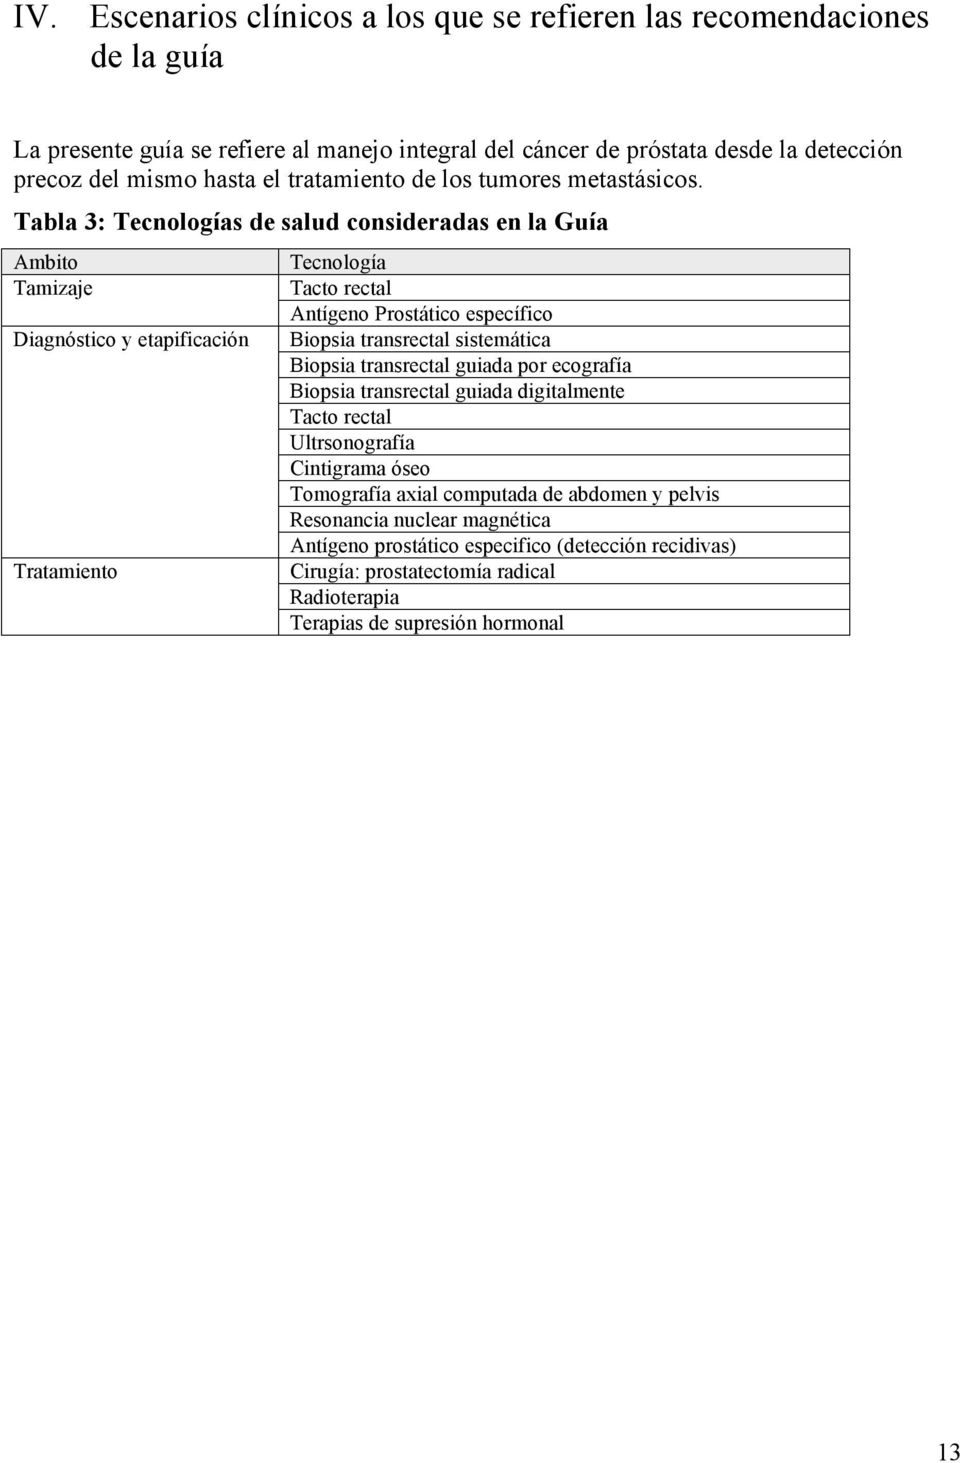 Tabla 3: Tecnologías de salud consideradas en la Guía Ambito Tamizaje Diagnóstico y etapificación Tratamiento Tecnología Tacto rectal Antígeno Prostático específico Biopsia transrectal